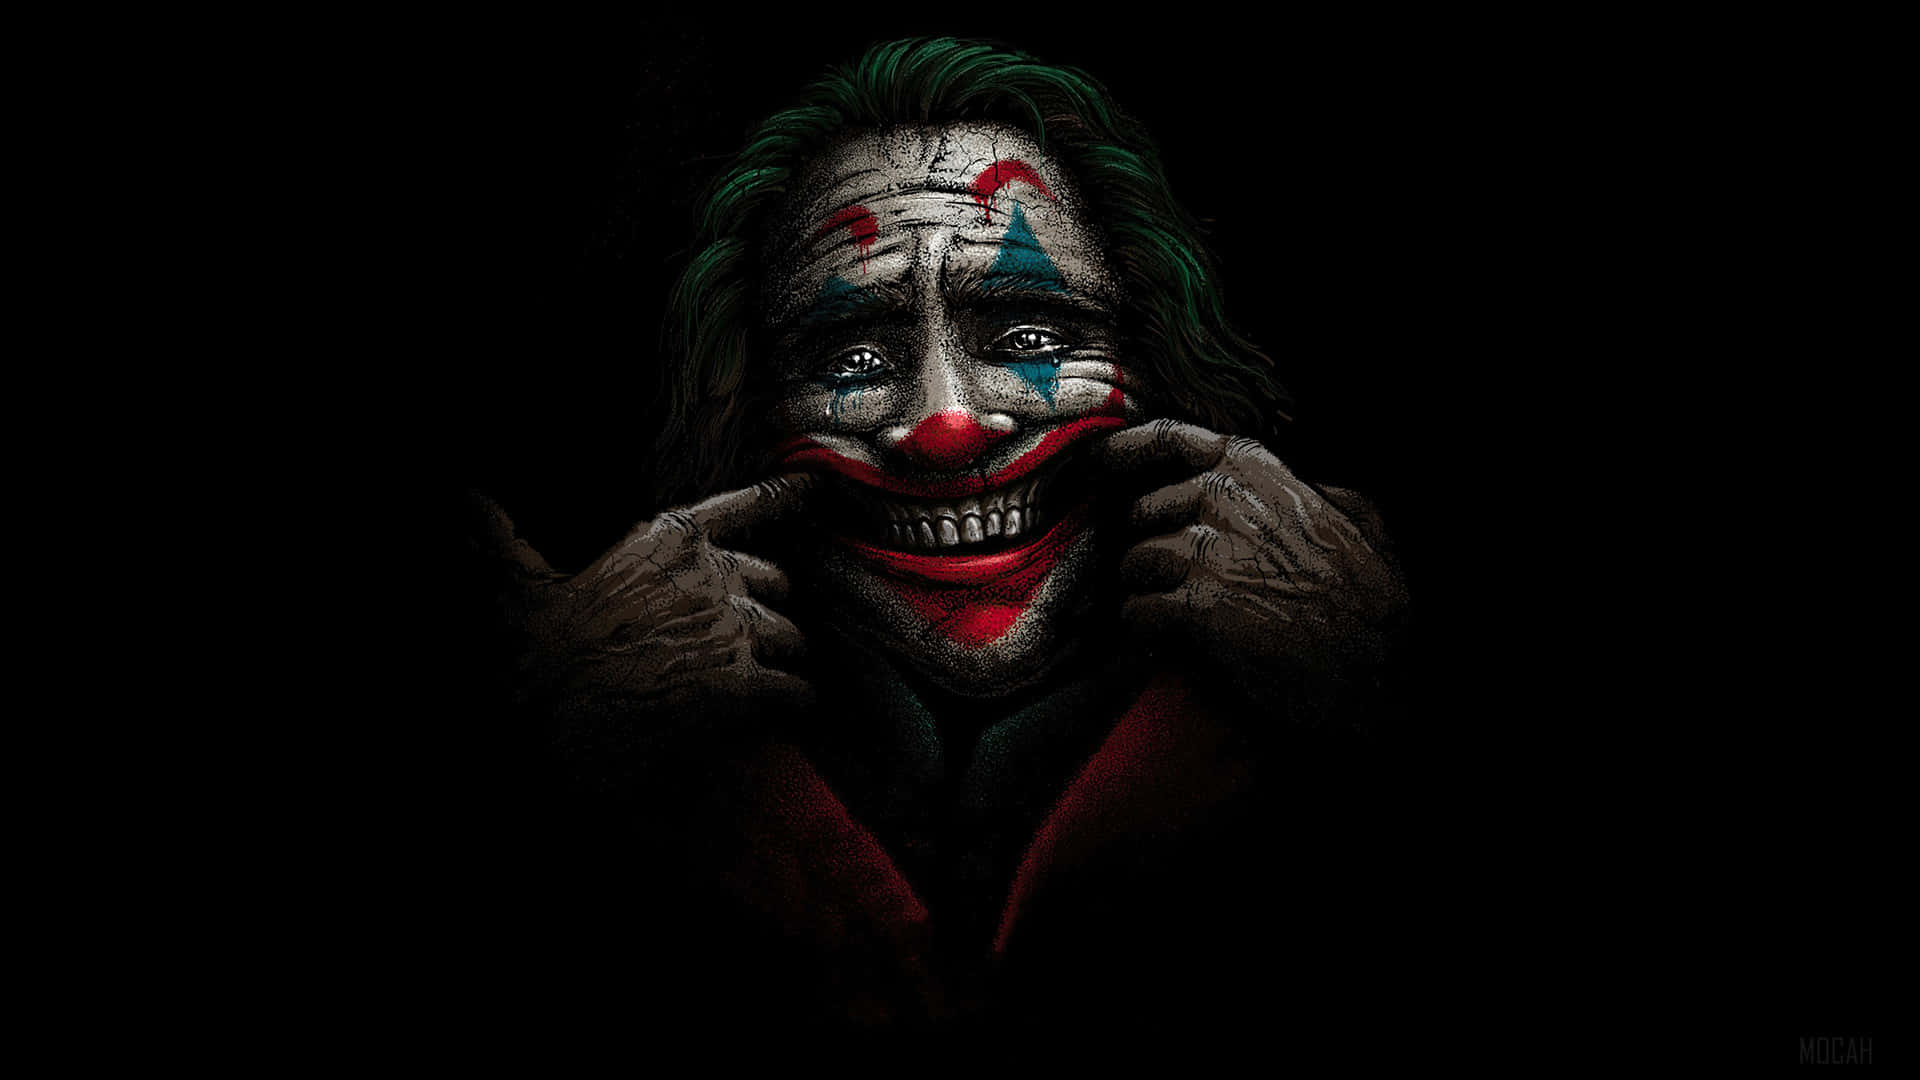 Download Dark Joker 3840 X 2160 Wallpaper Wallpaper | Wallpapers.com